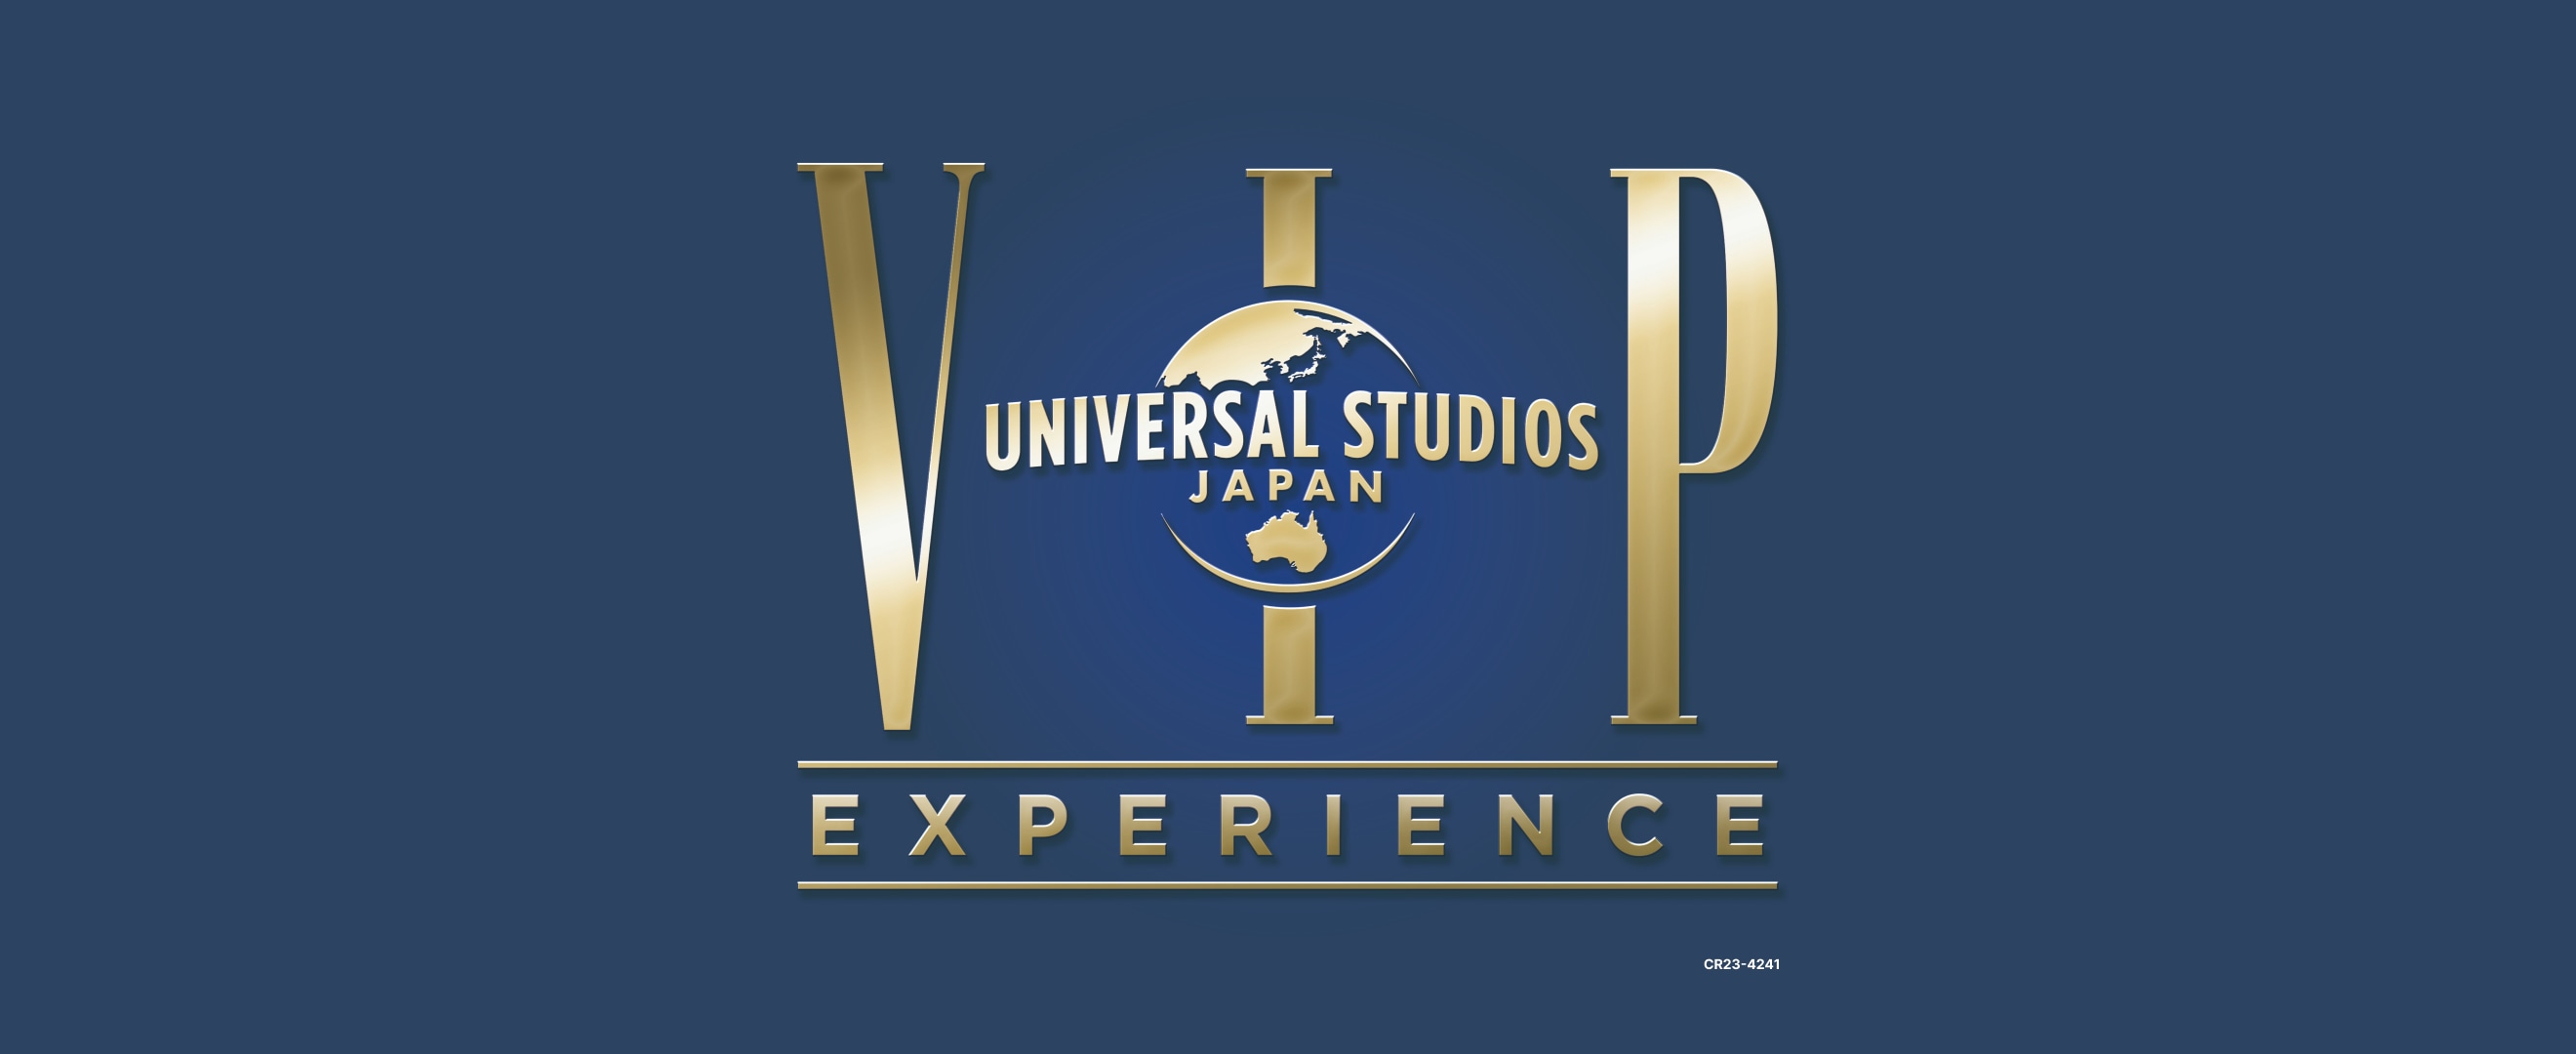 universal studio vip tour osaka